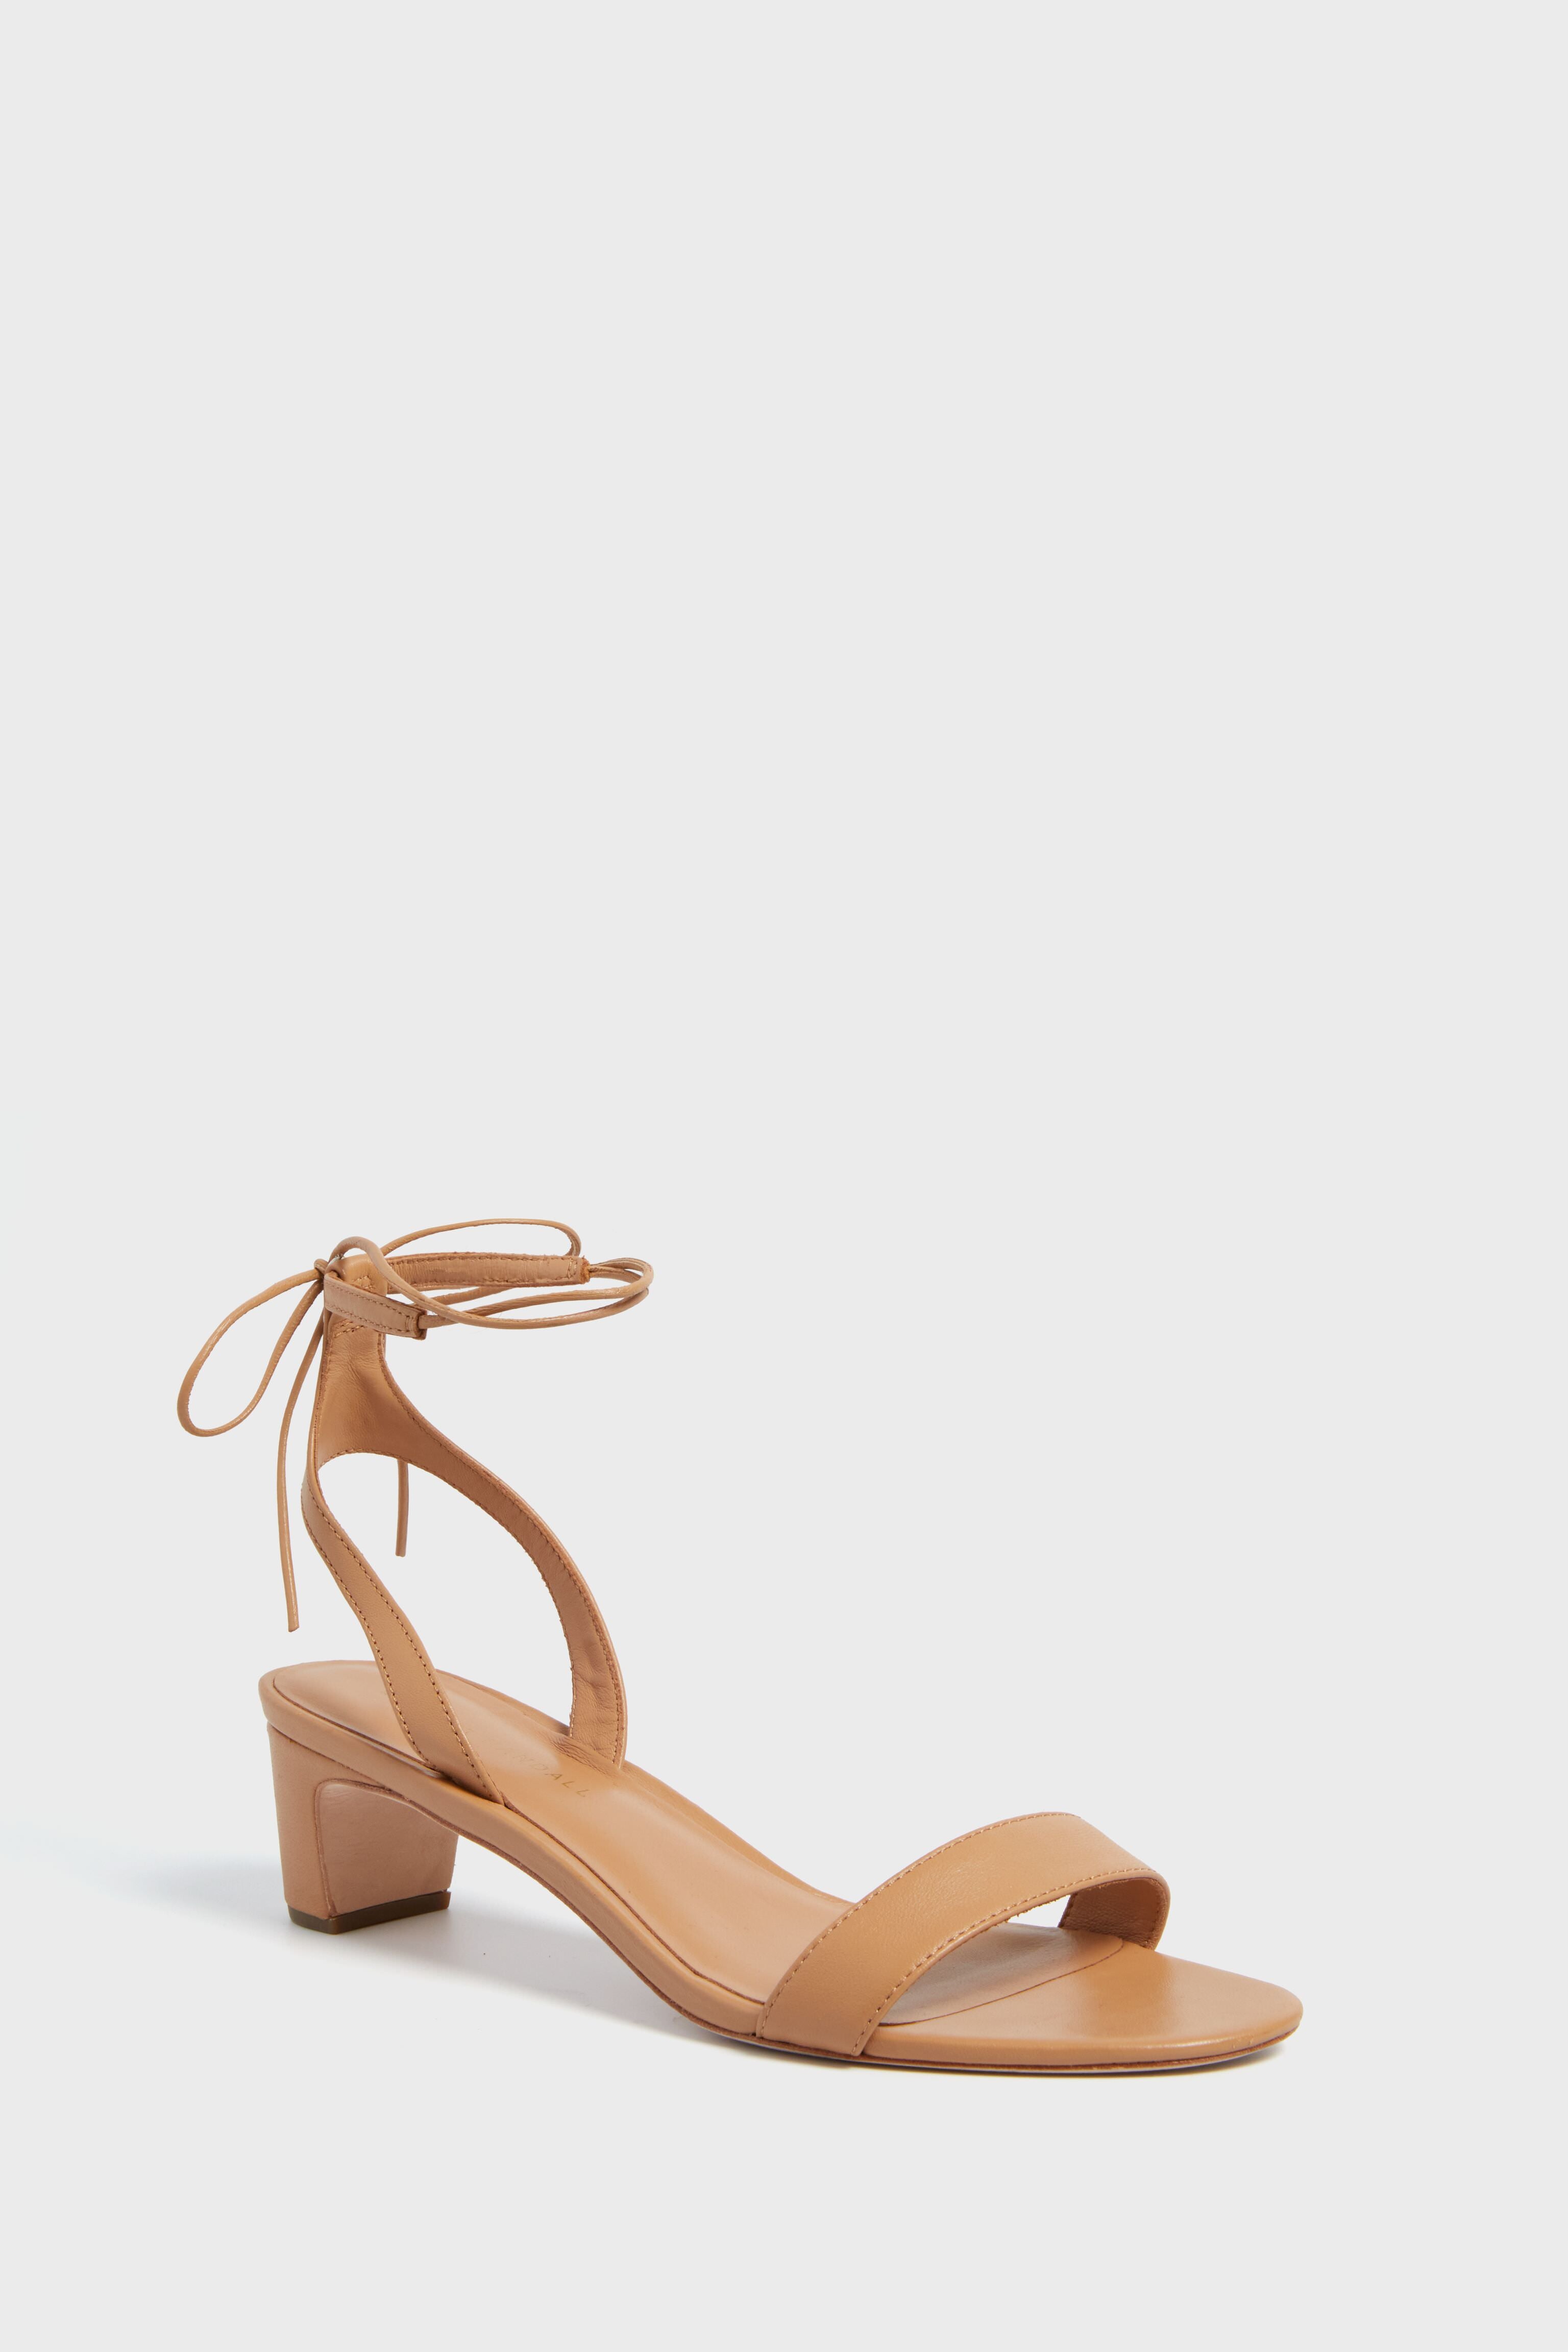 Loeffler Randall Women's Sandals | ShopStyle